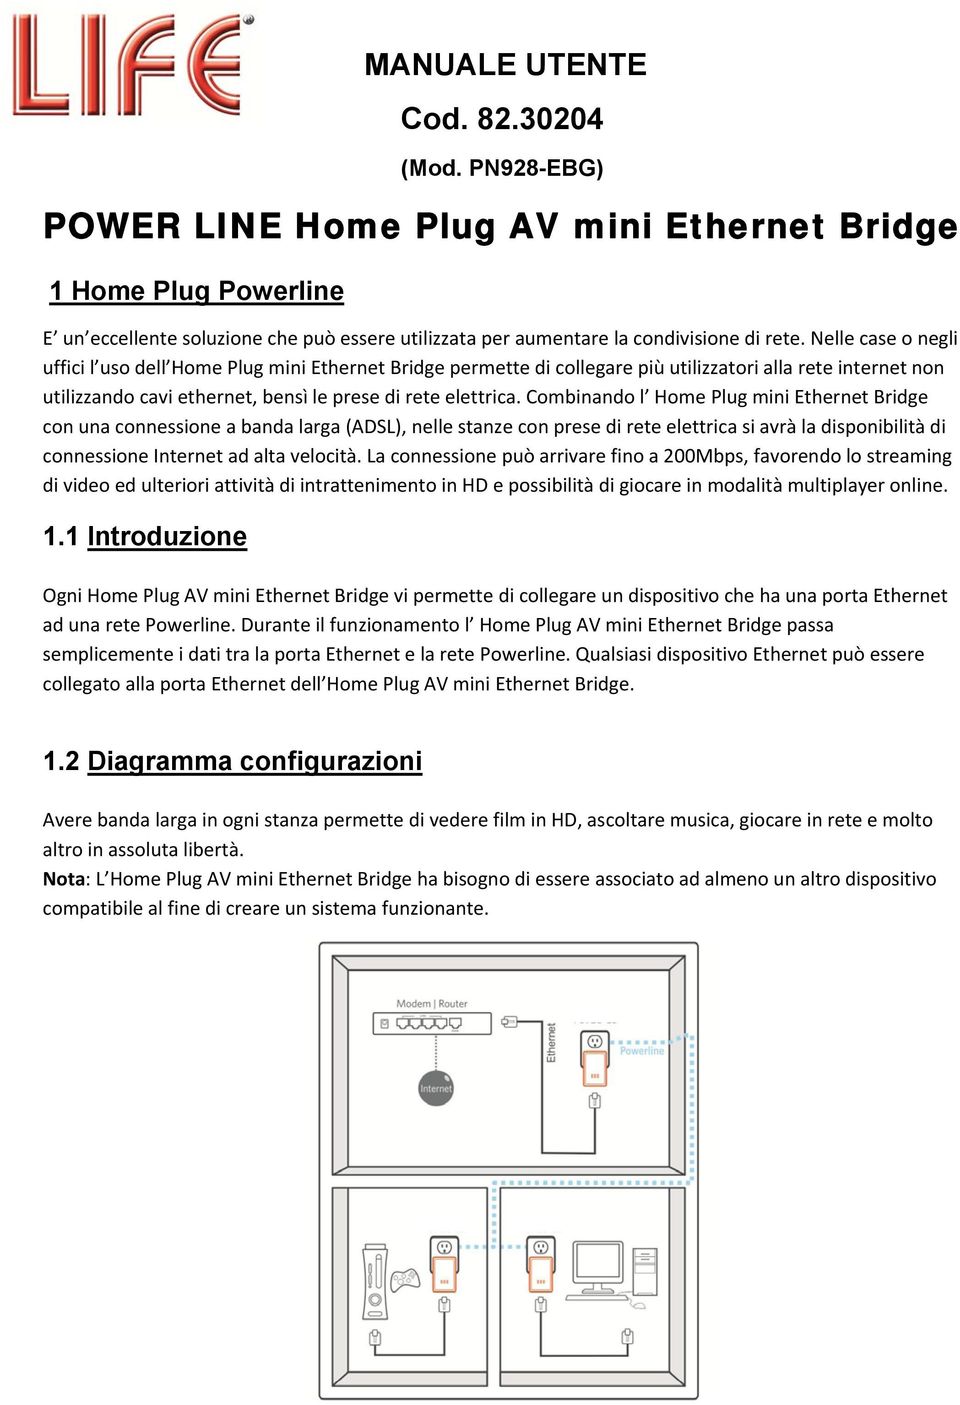 Nelle case o negli uffici l uso dell Home Plug mini Ethernet Bridge permette di collegare più utilizzatori alla rete internet non utilizzando cavi ethernet, bensì le prese di rete elettrica.